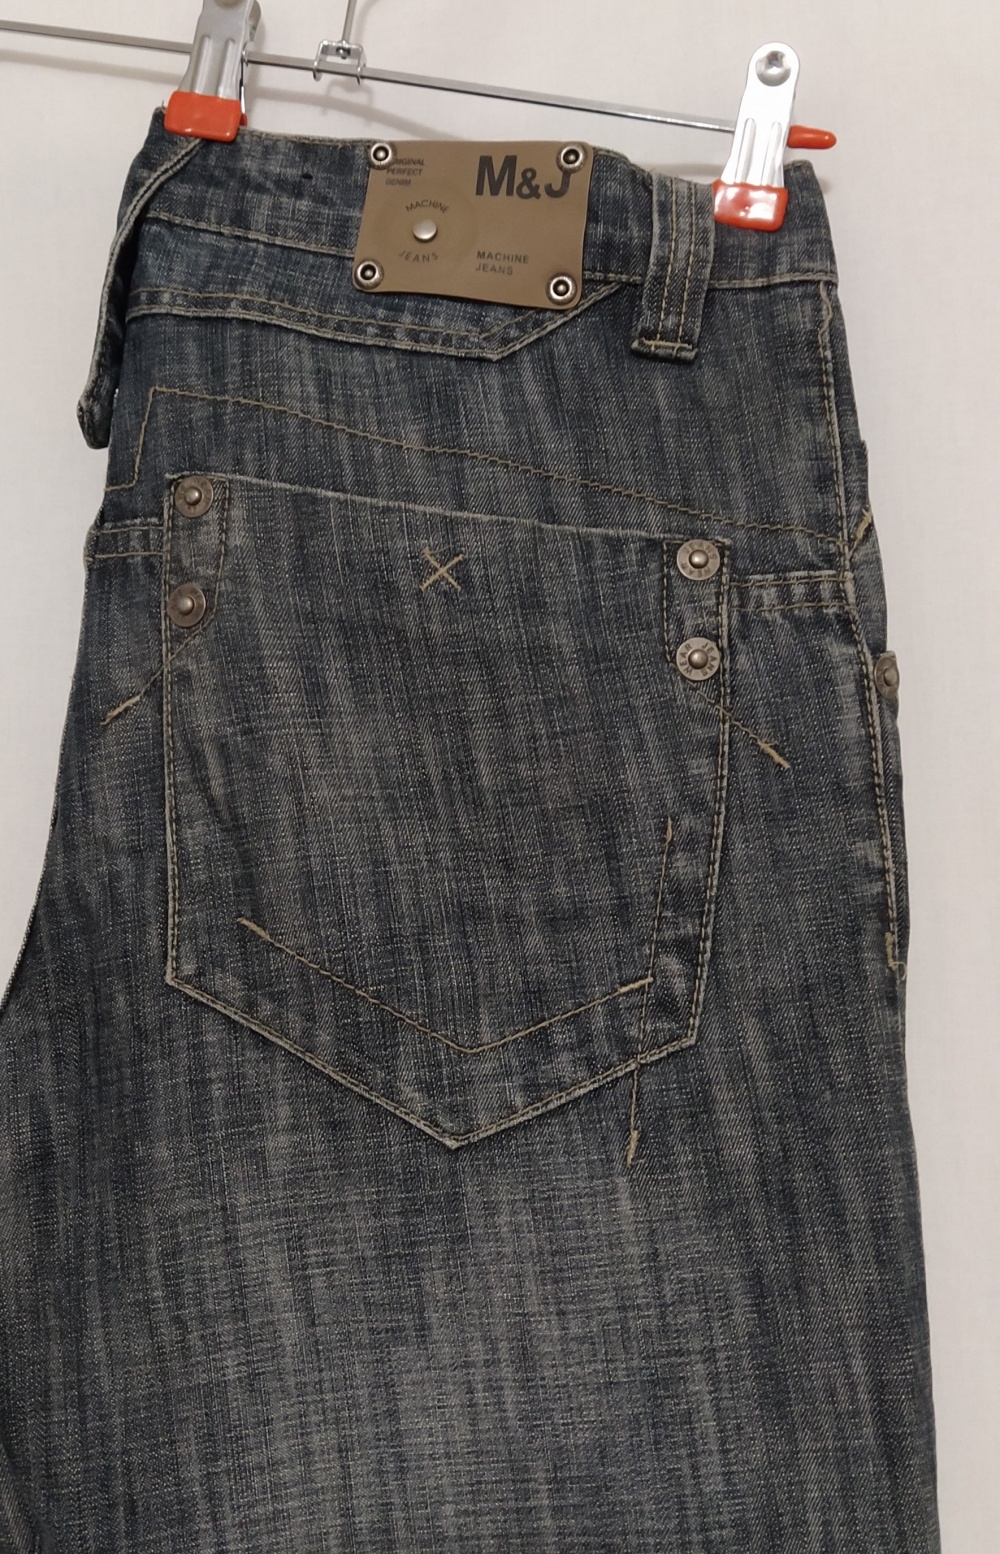 Джинсы M#J, 30 джинсовый размер.